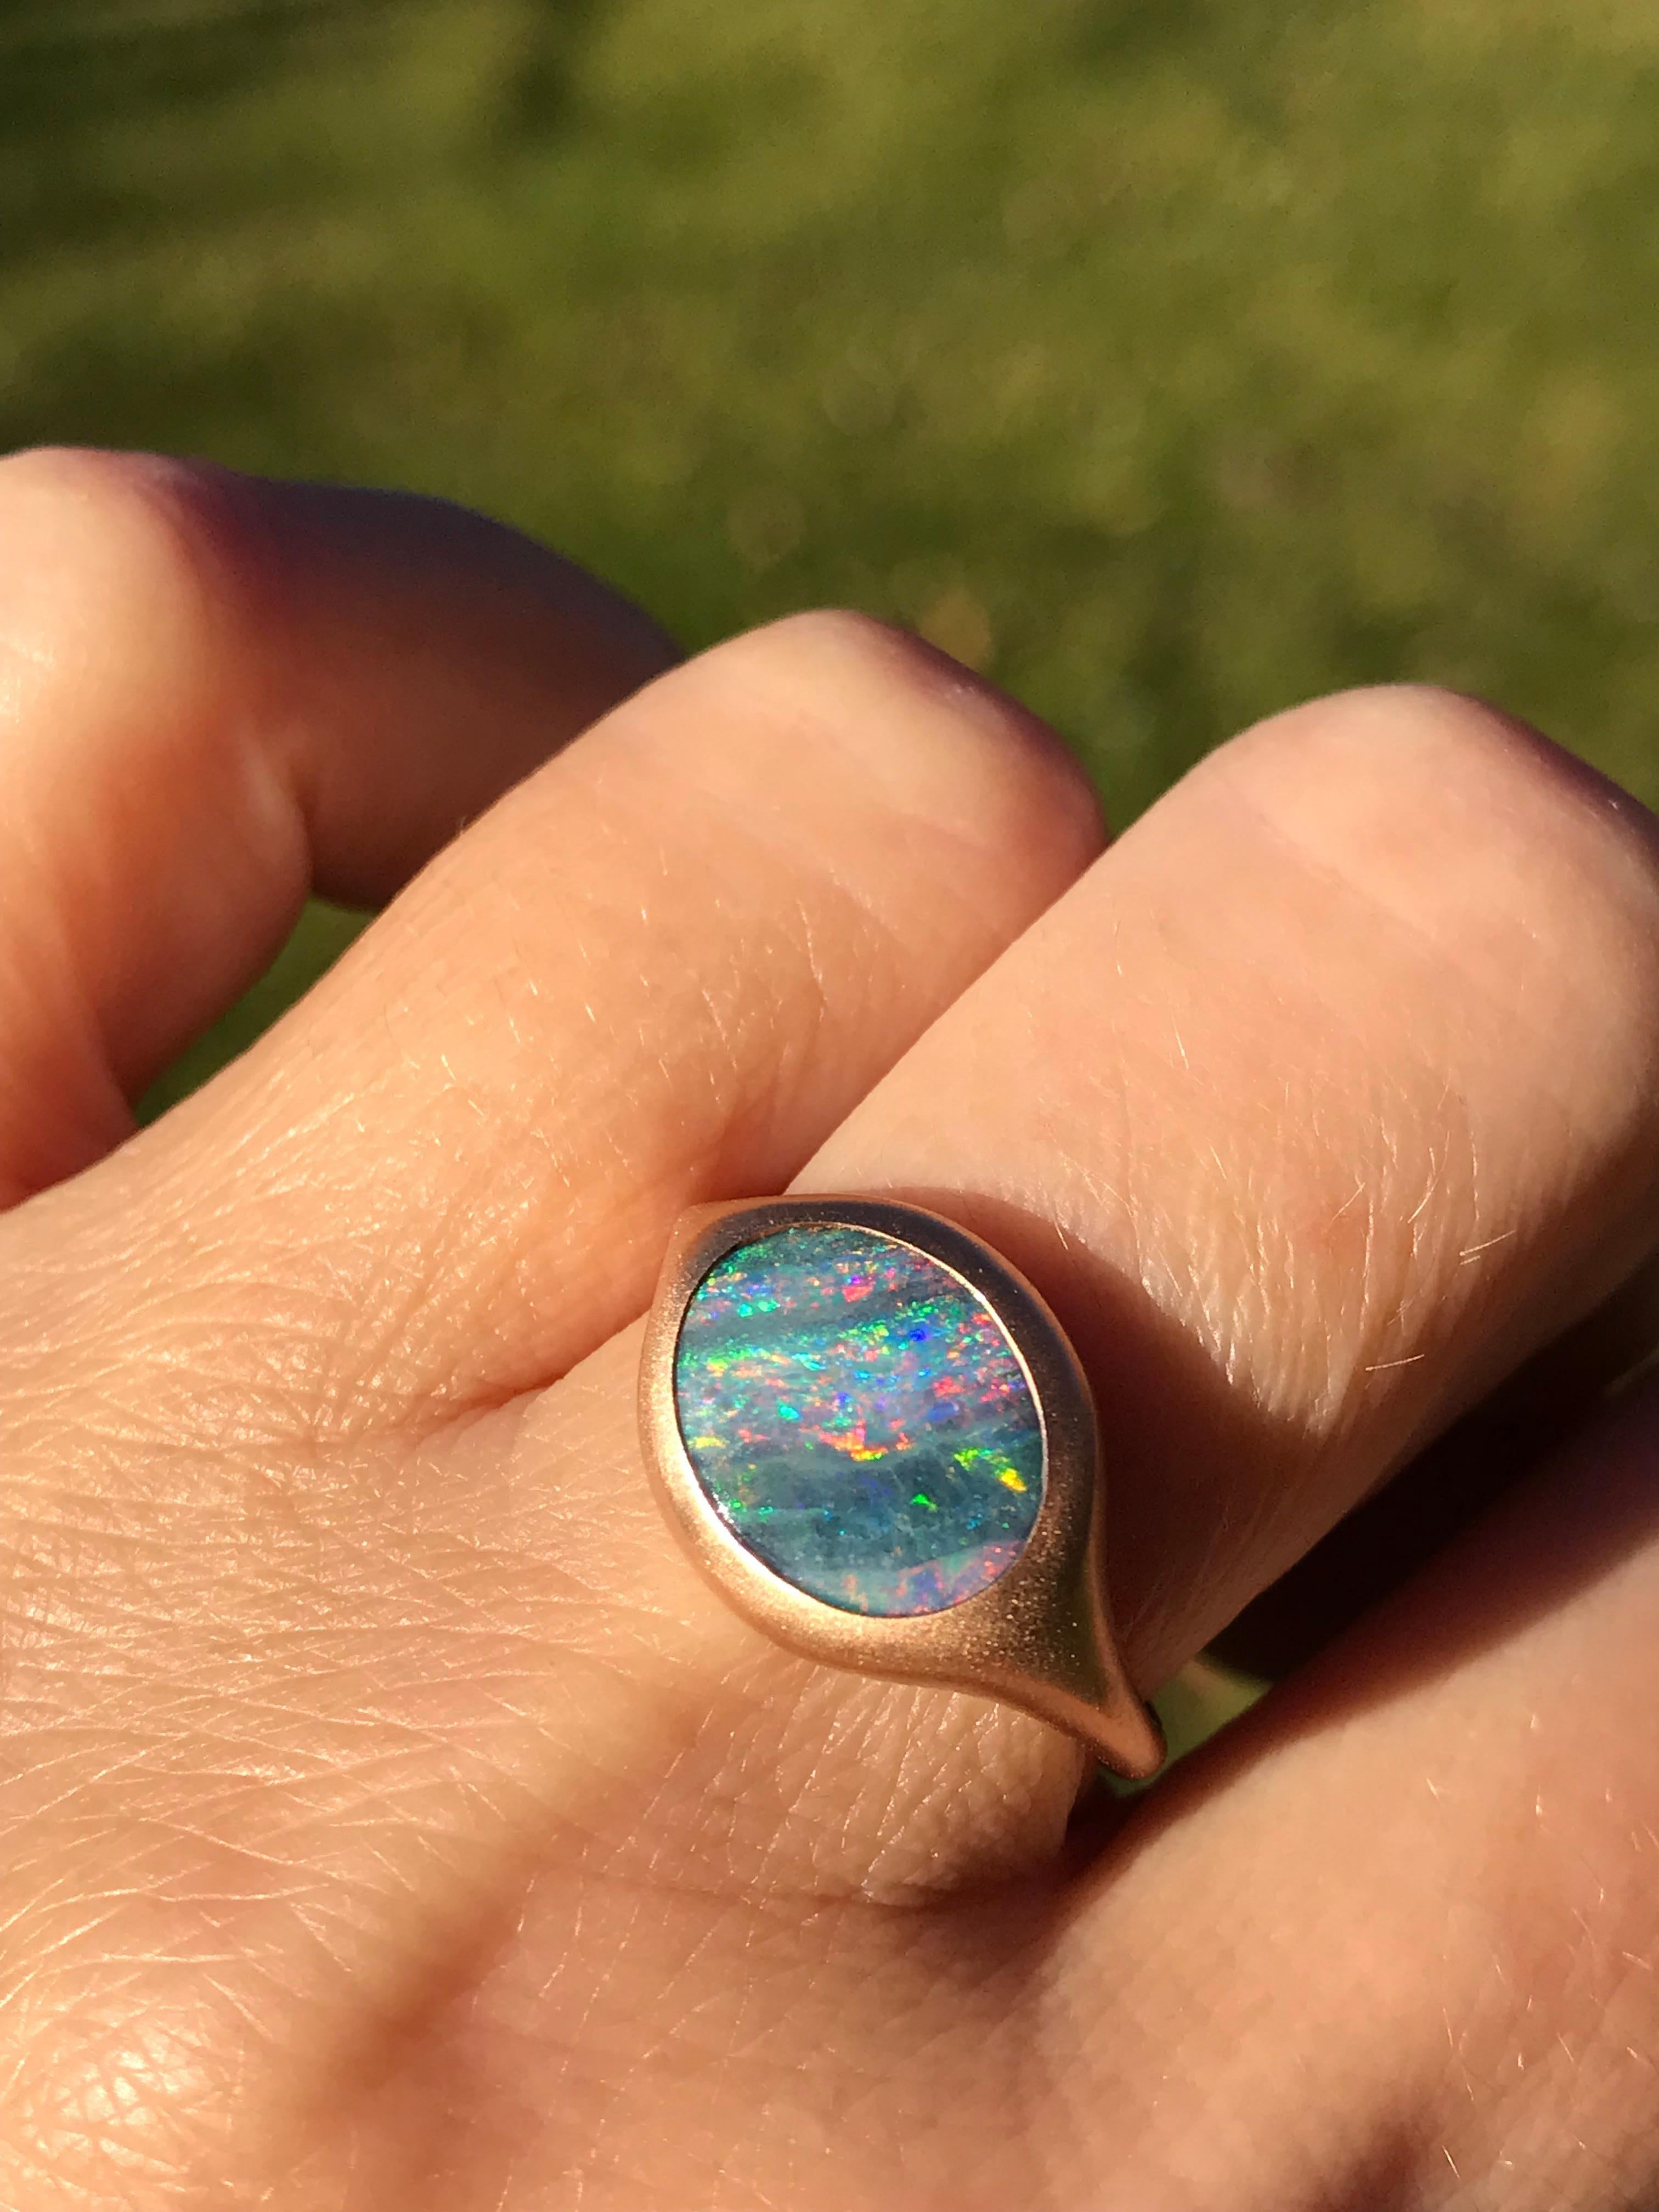 Dalben Design 18k Roségold satiniert Ring mit einem  2,77 Karat ovaler australischer Boulder-Opal in Lünettenfassung 
Der australische Opal hat rosa, blaue und grüne Flecken.
Ringgröße US  6 3/4  - EU 54 mit Größenanpassung an die meisten